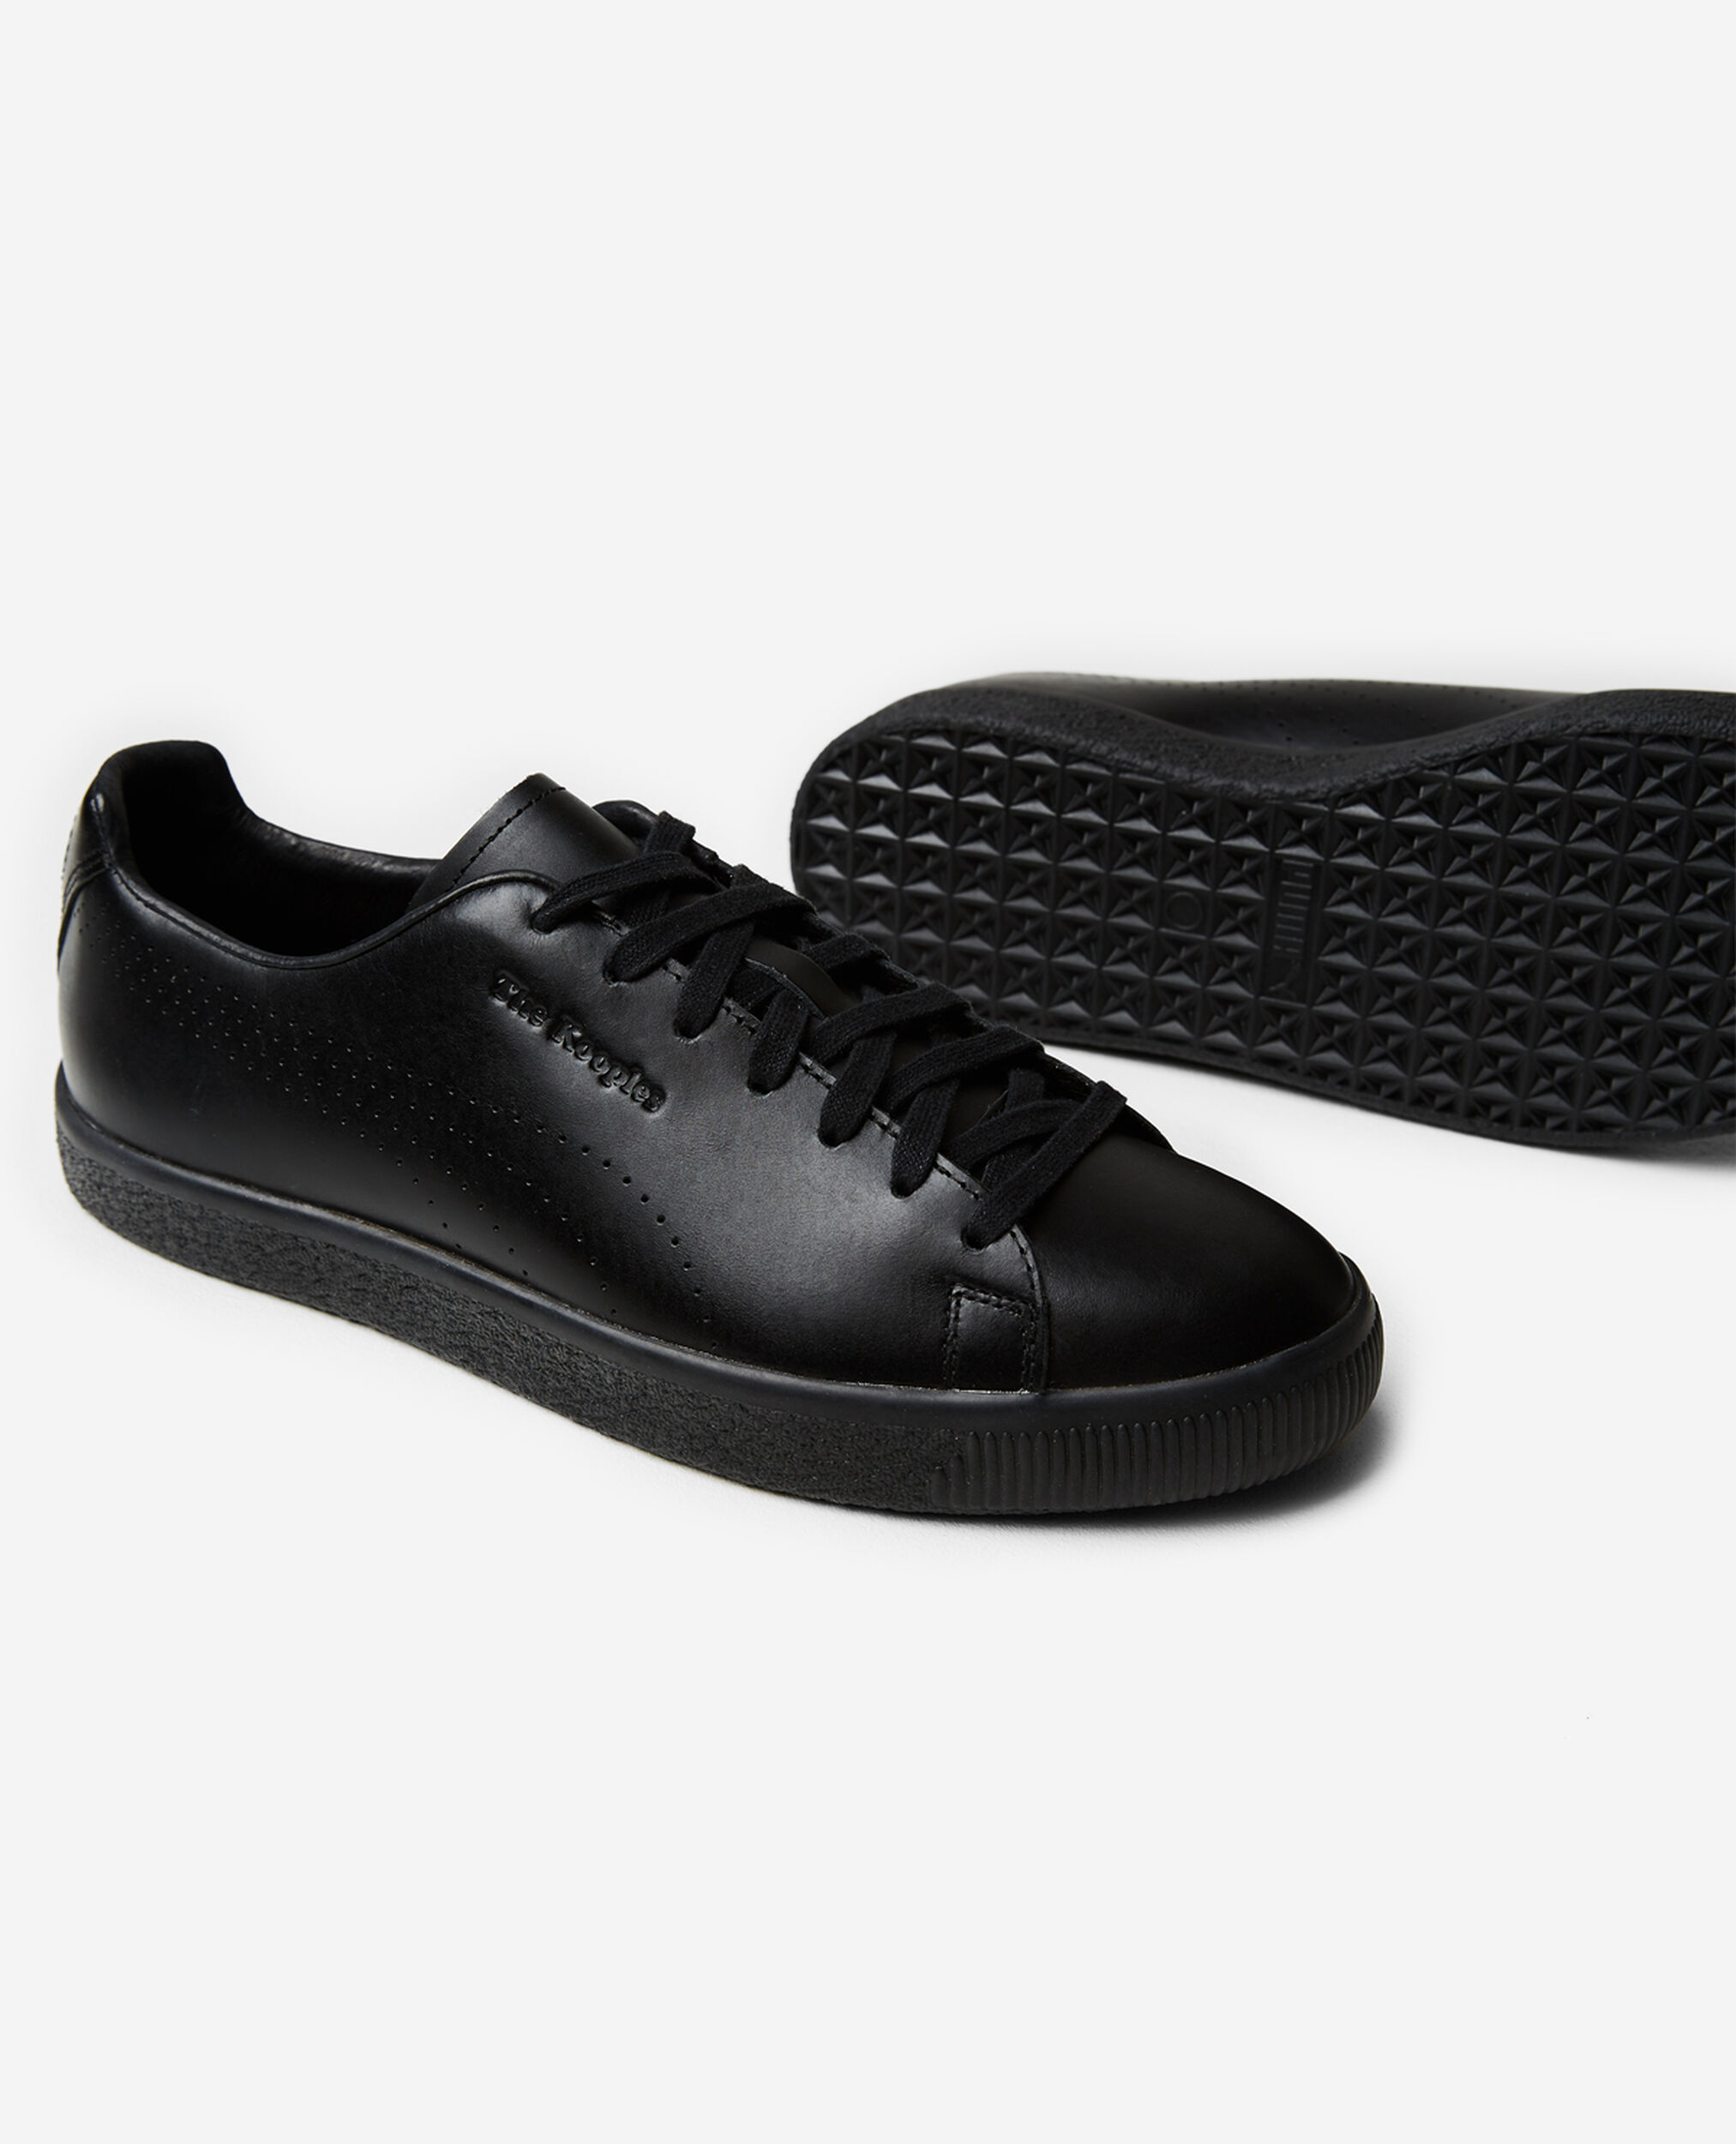 Black x Kooples Clyde sneakers